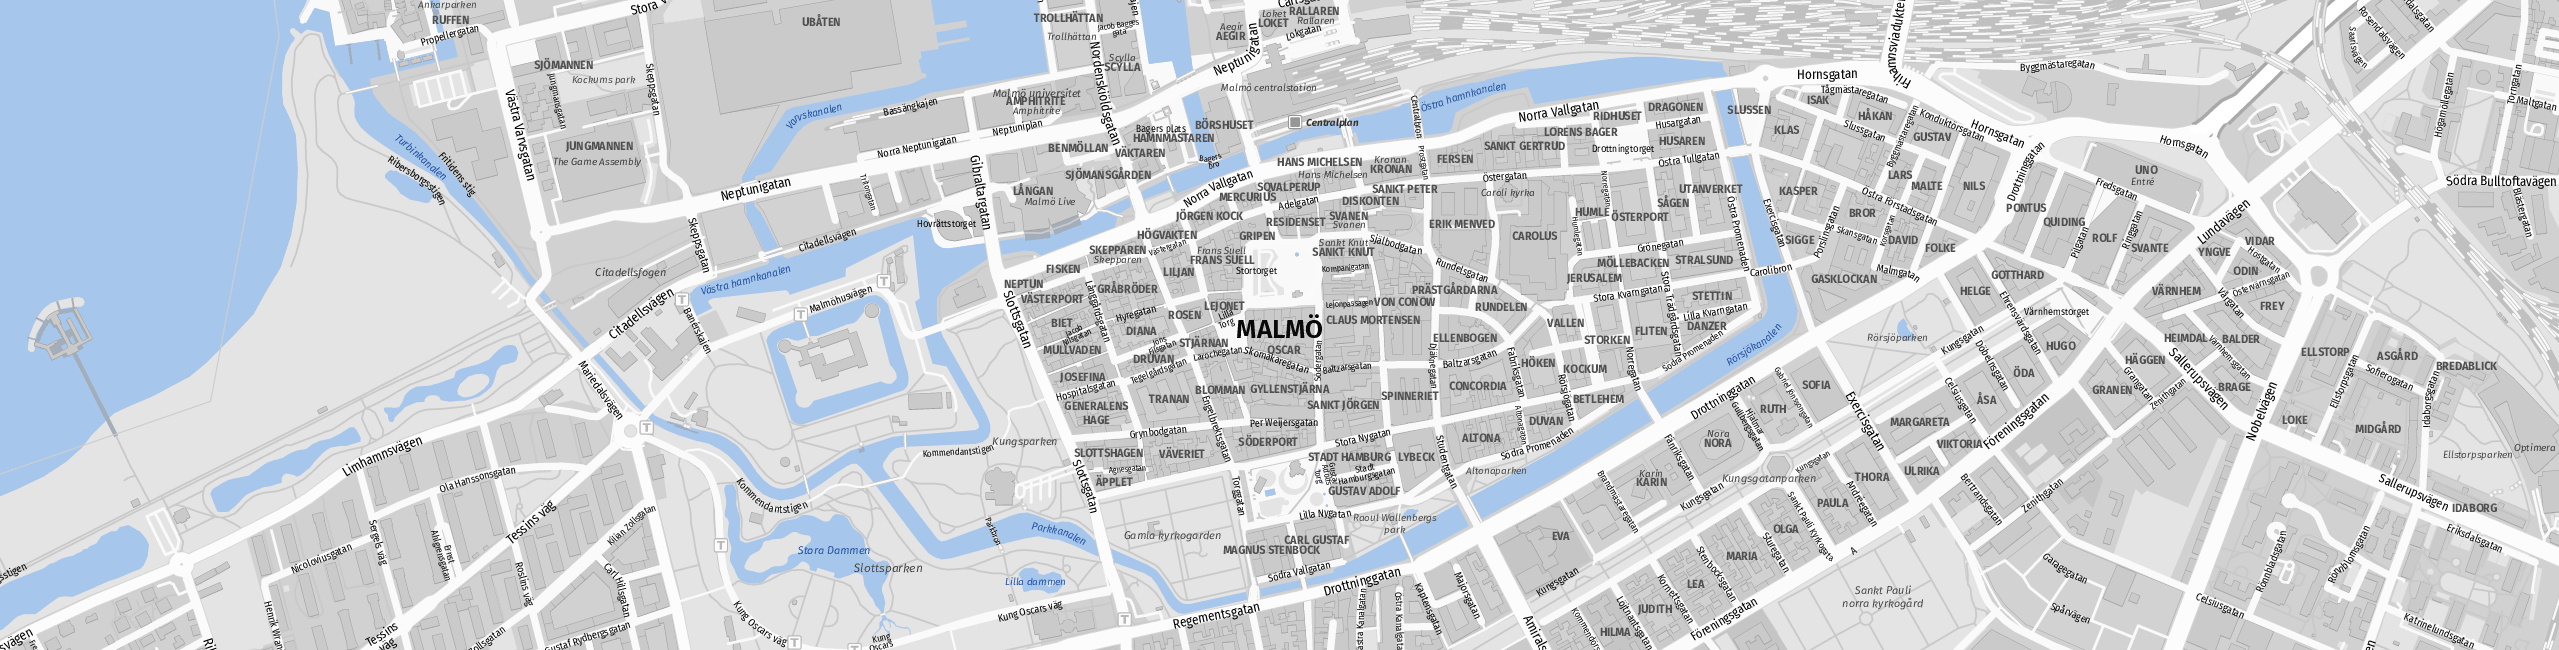 Stadtplan Malmö zum Downloaden.